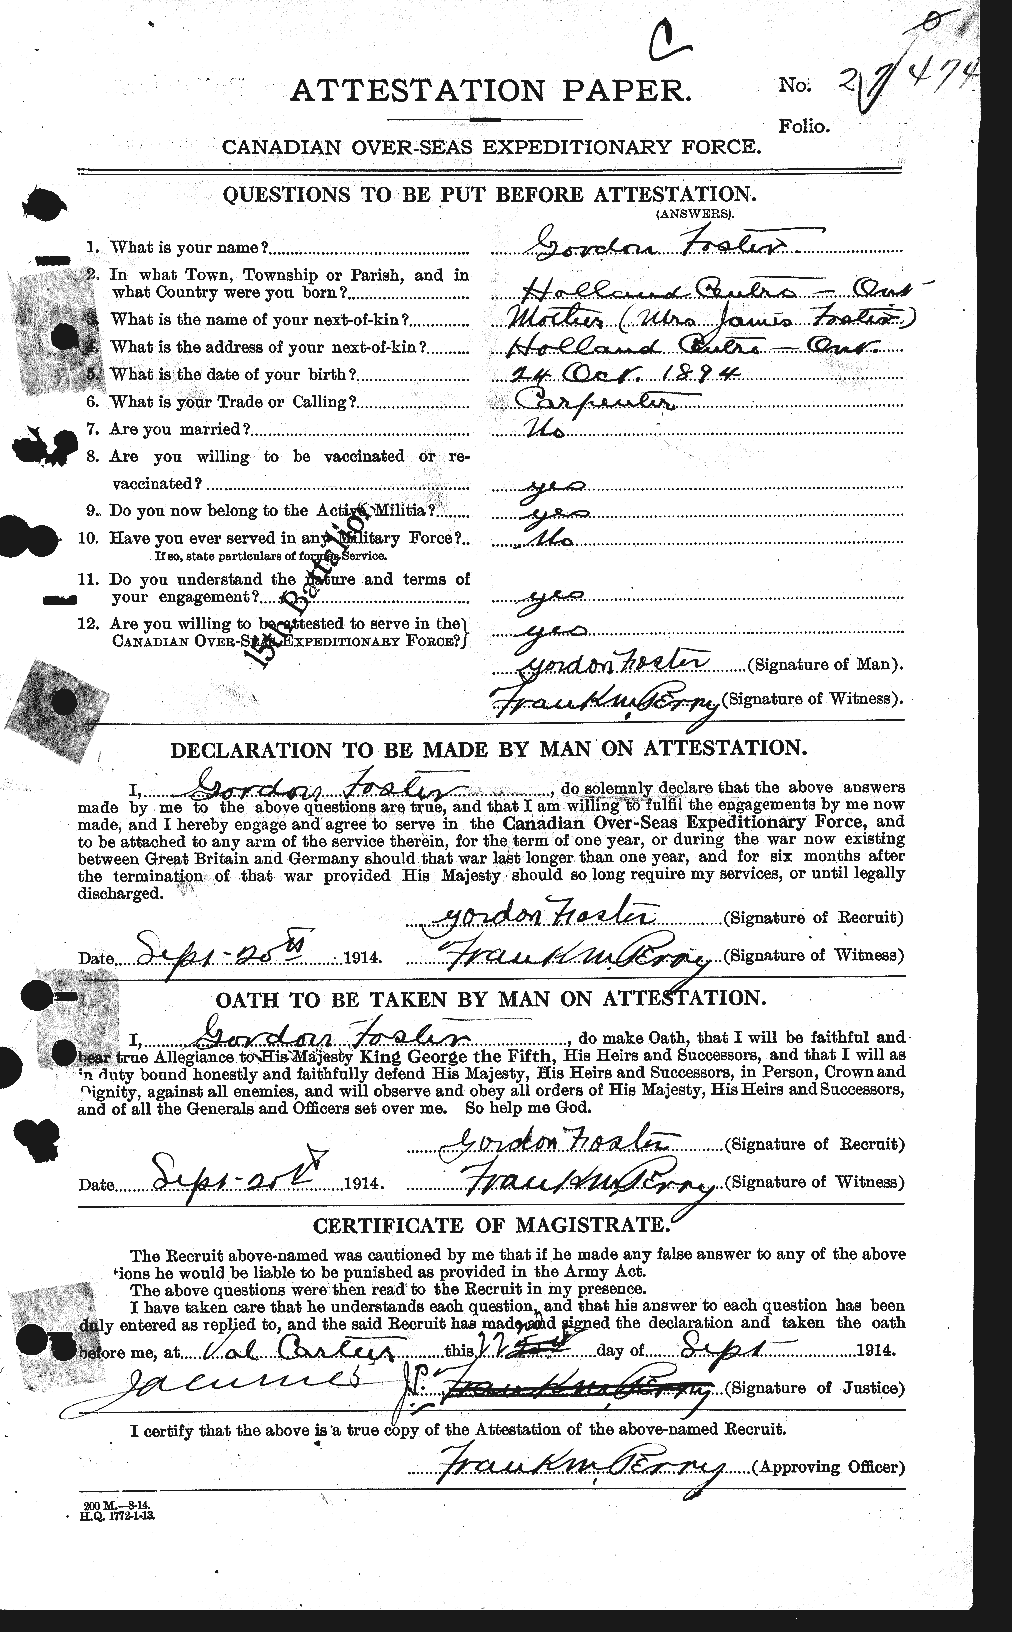 Dossiers du Personnel de la Première Guerre mondiale - CEC 330717a